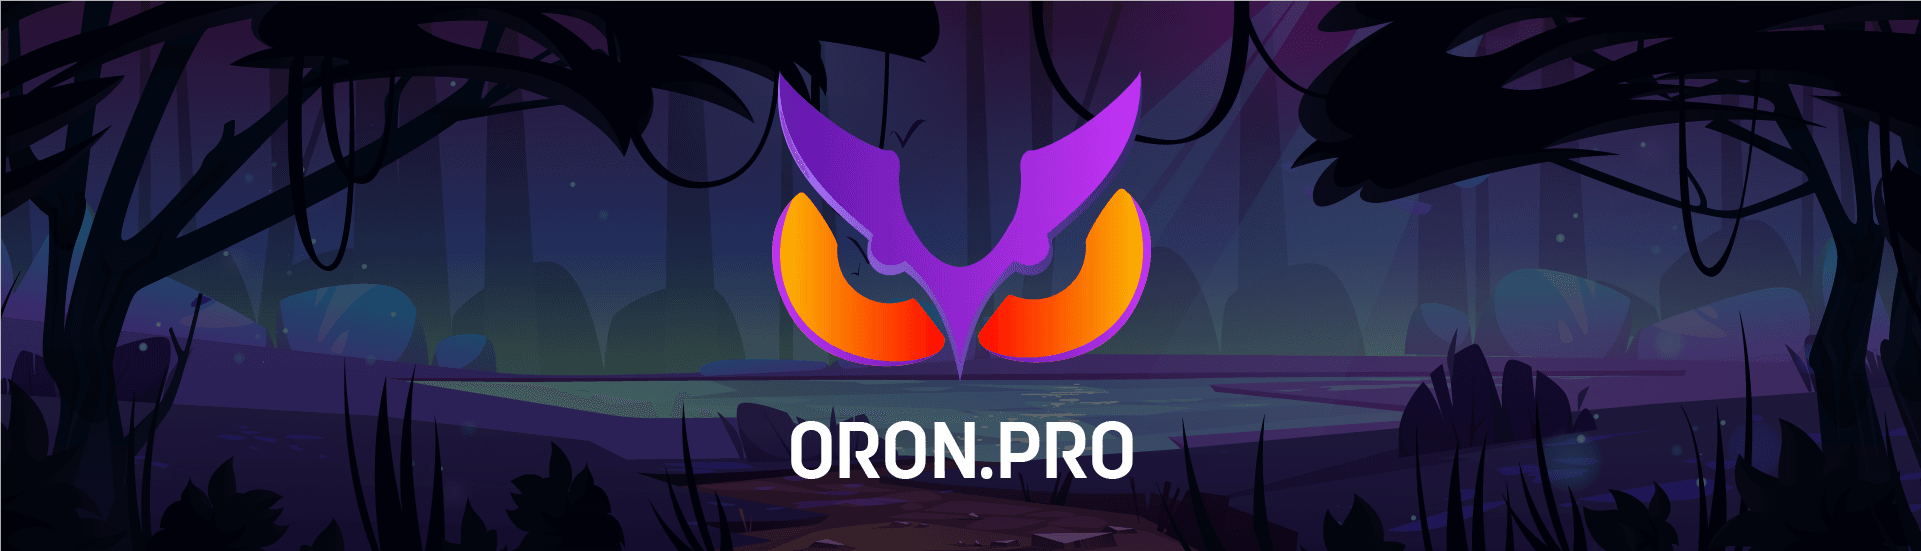 Oron_pro 橫幅